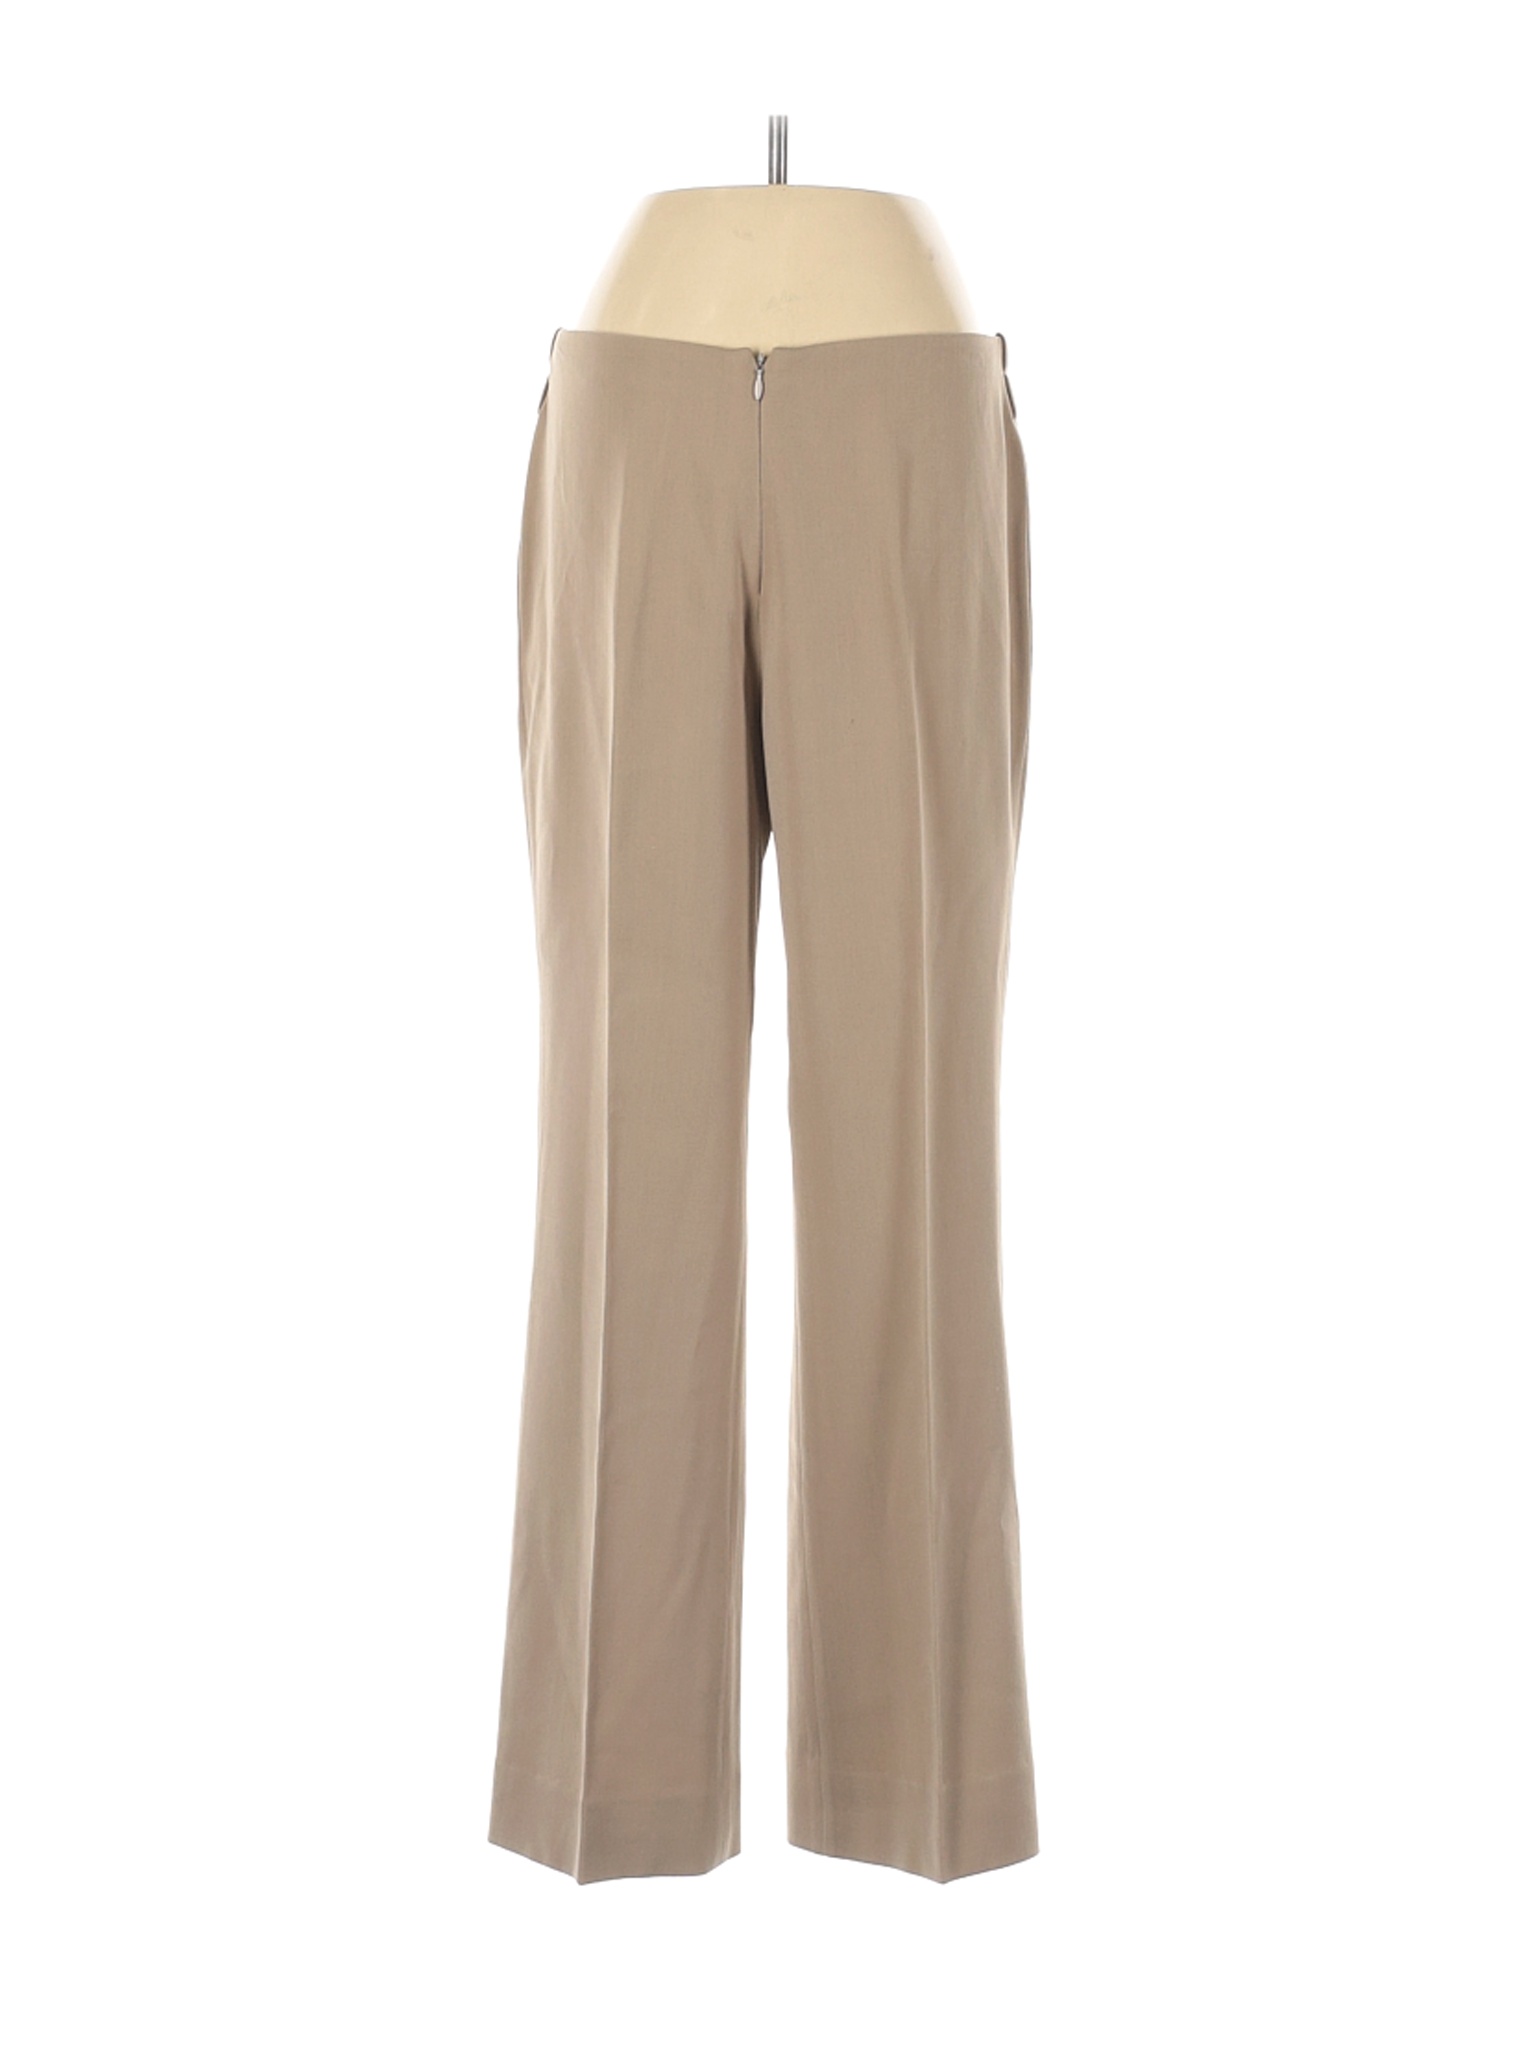 Thalian Women Brown Dress Pants 2 | eBay